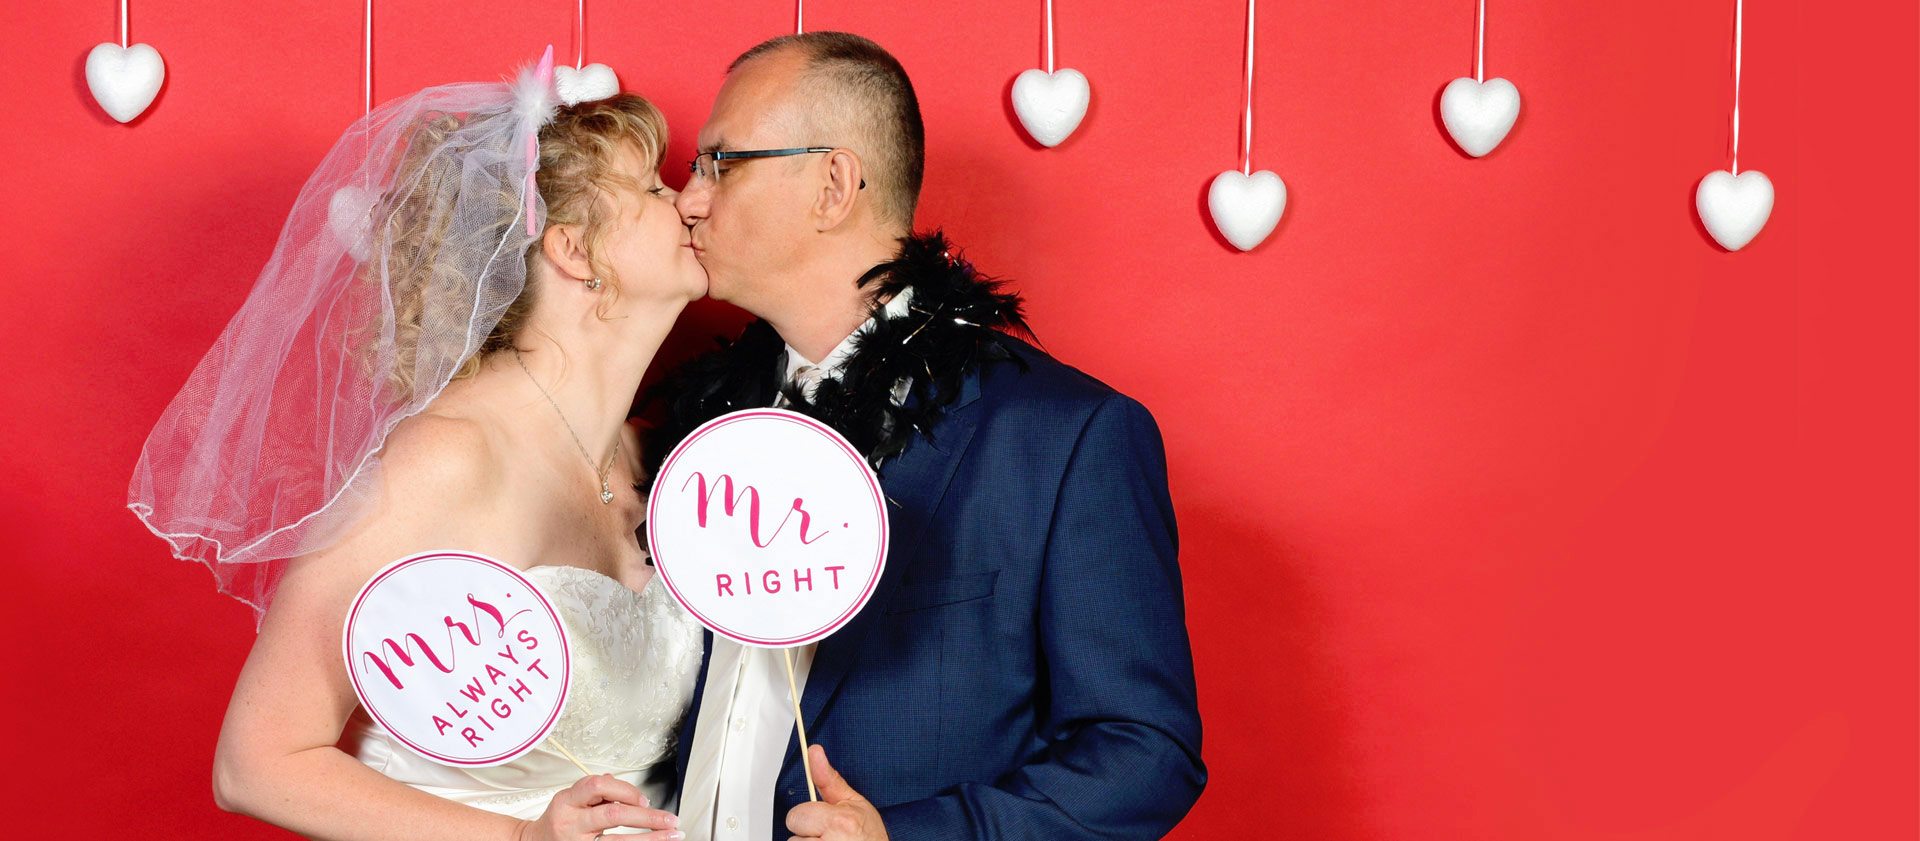 Ein Brautpaar küsst sich in einem Photobooth und hält dabei Schilder Mr. Right und Mrs. Always Right